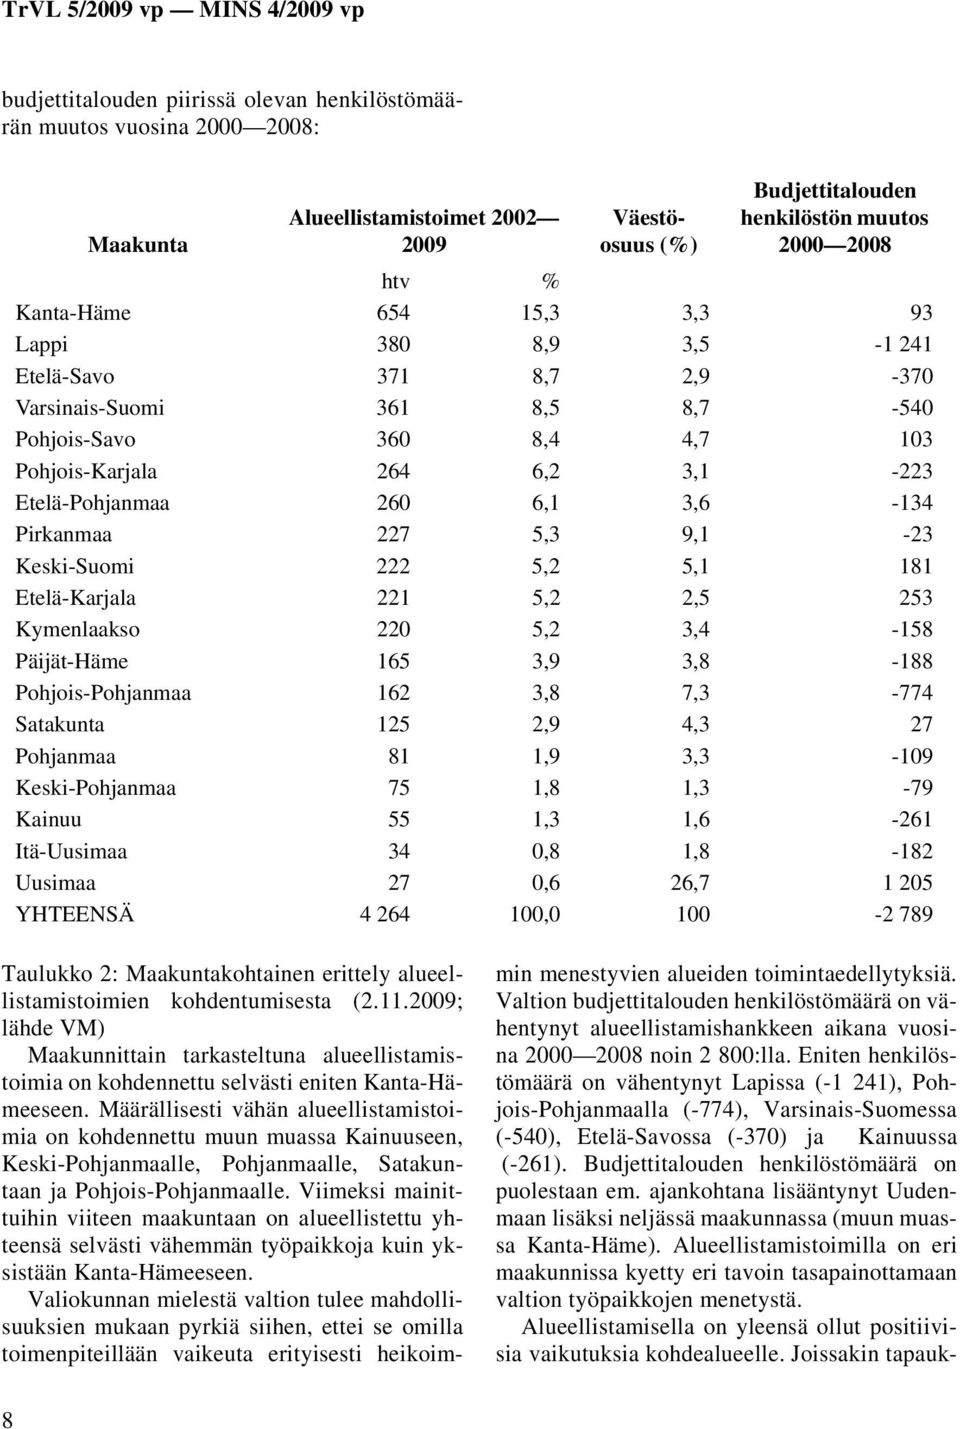 Eniten henkilöstömäärä on vähentynyt Lapissa (-1 241), Pohjois-Pohjanmaalla (-774), Varsinais-Suomessa (-540), Etelä-Savossa (-370) ja Kainuussa (-261).